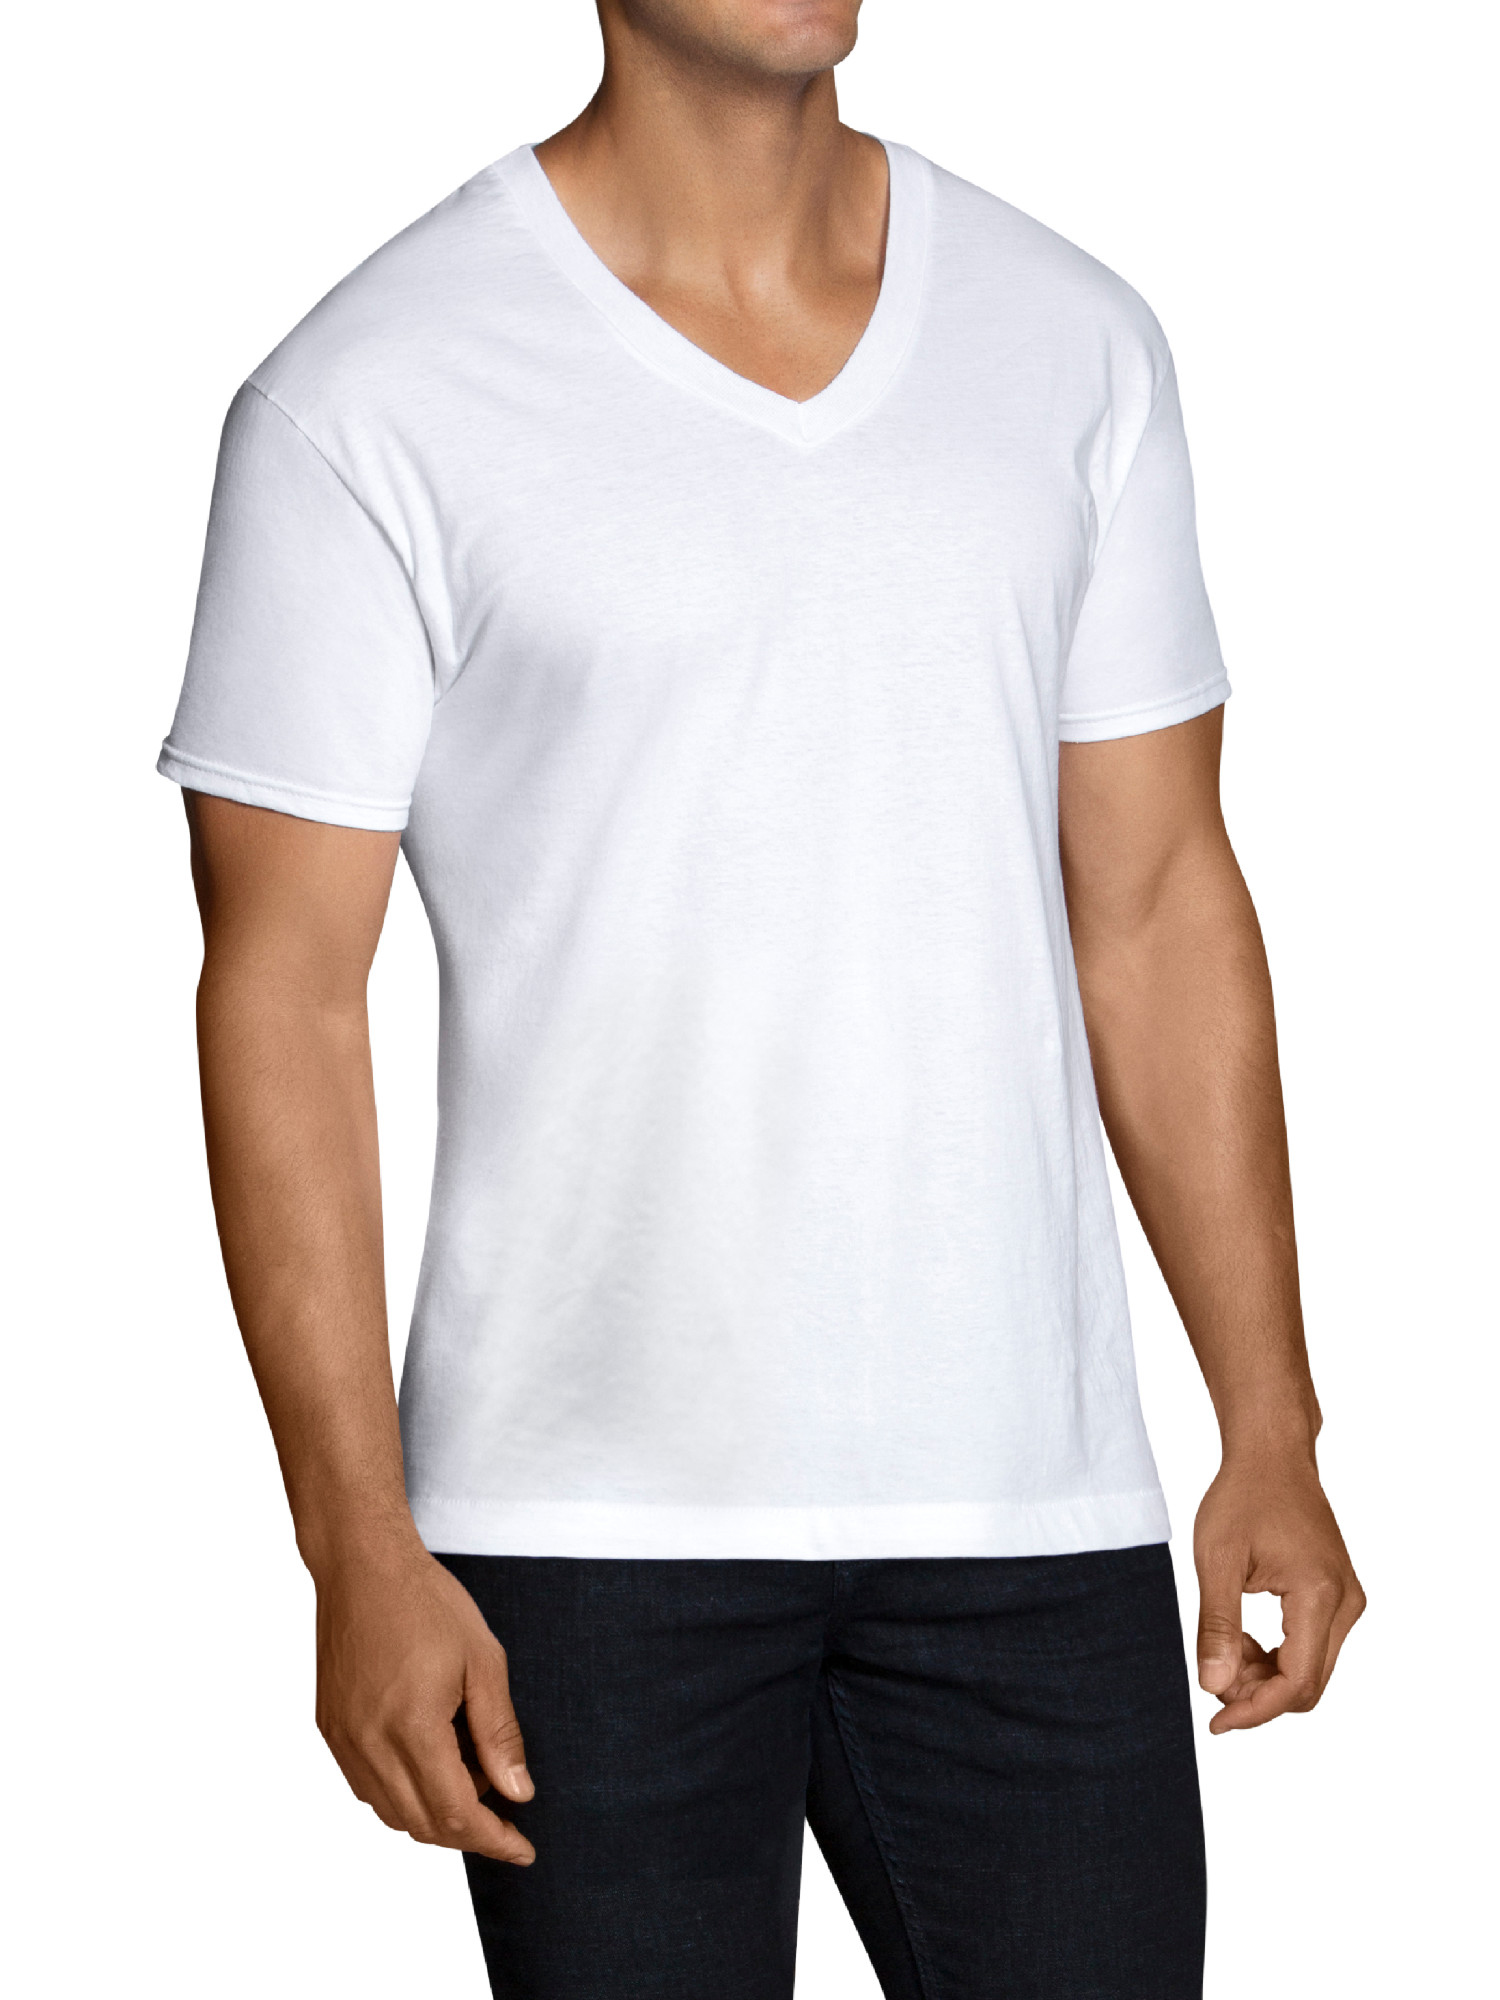 Fruit of the Loom Men’s Short Sleeve White V-Neck T-Shirts, 12 Pack  for $19.99